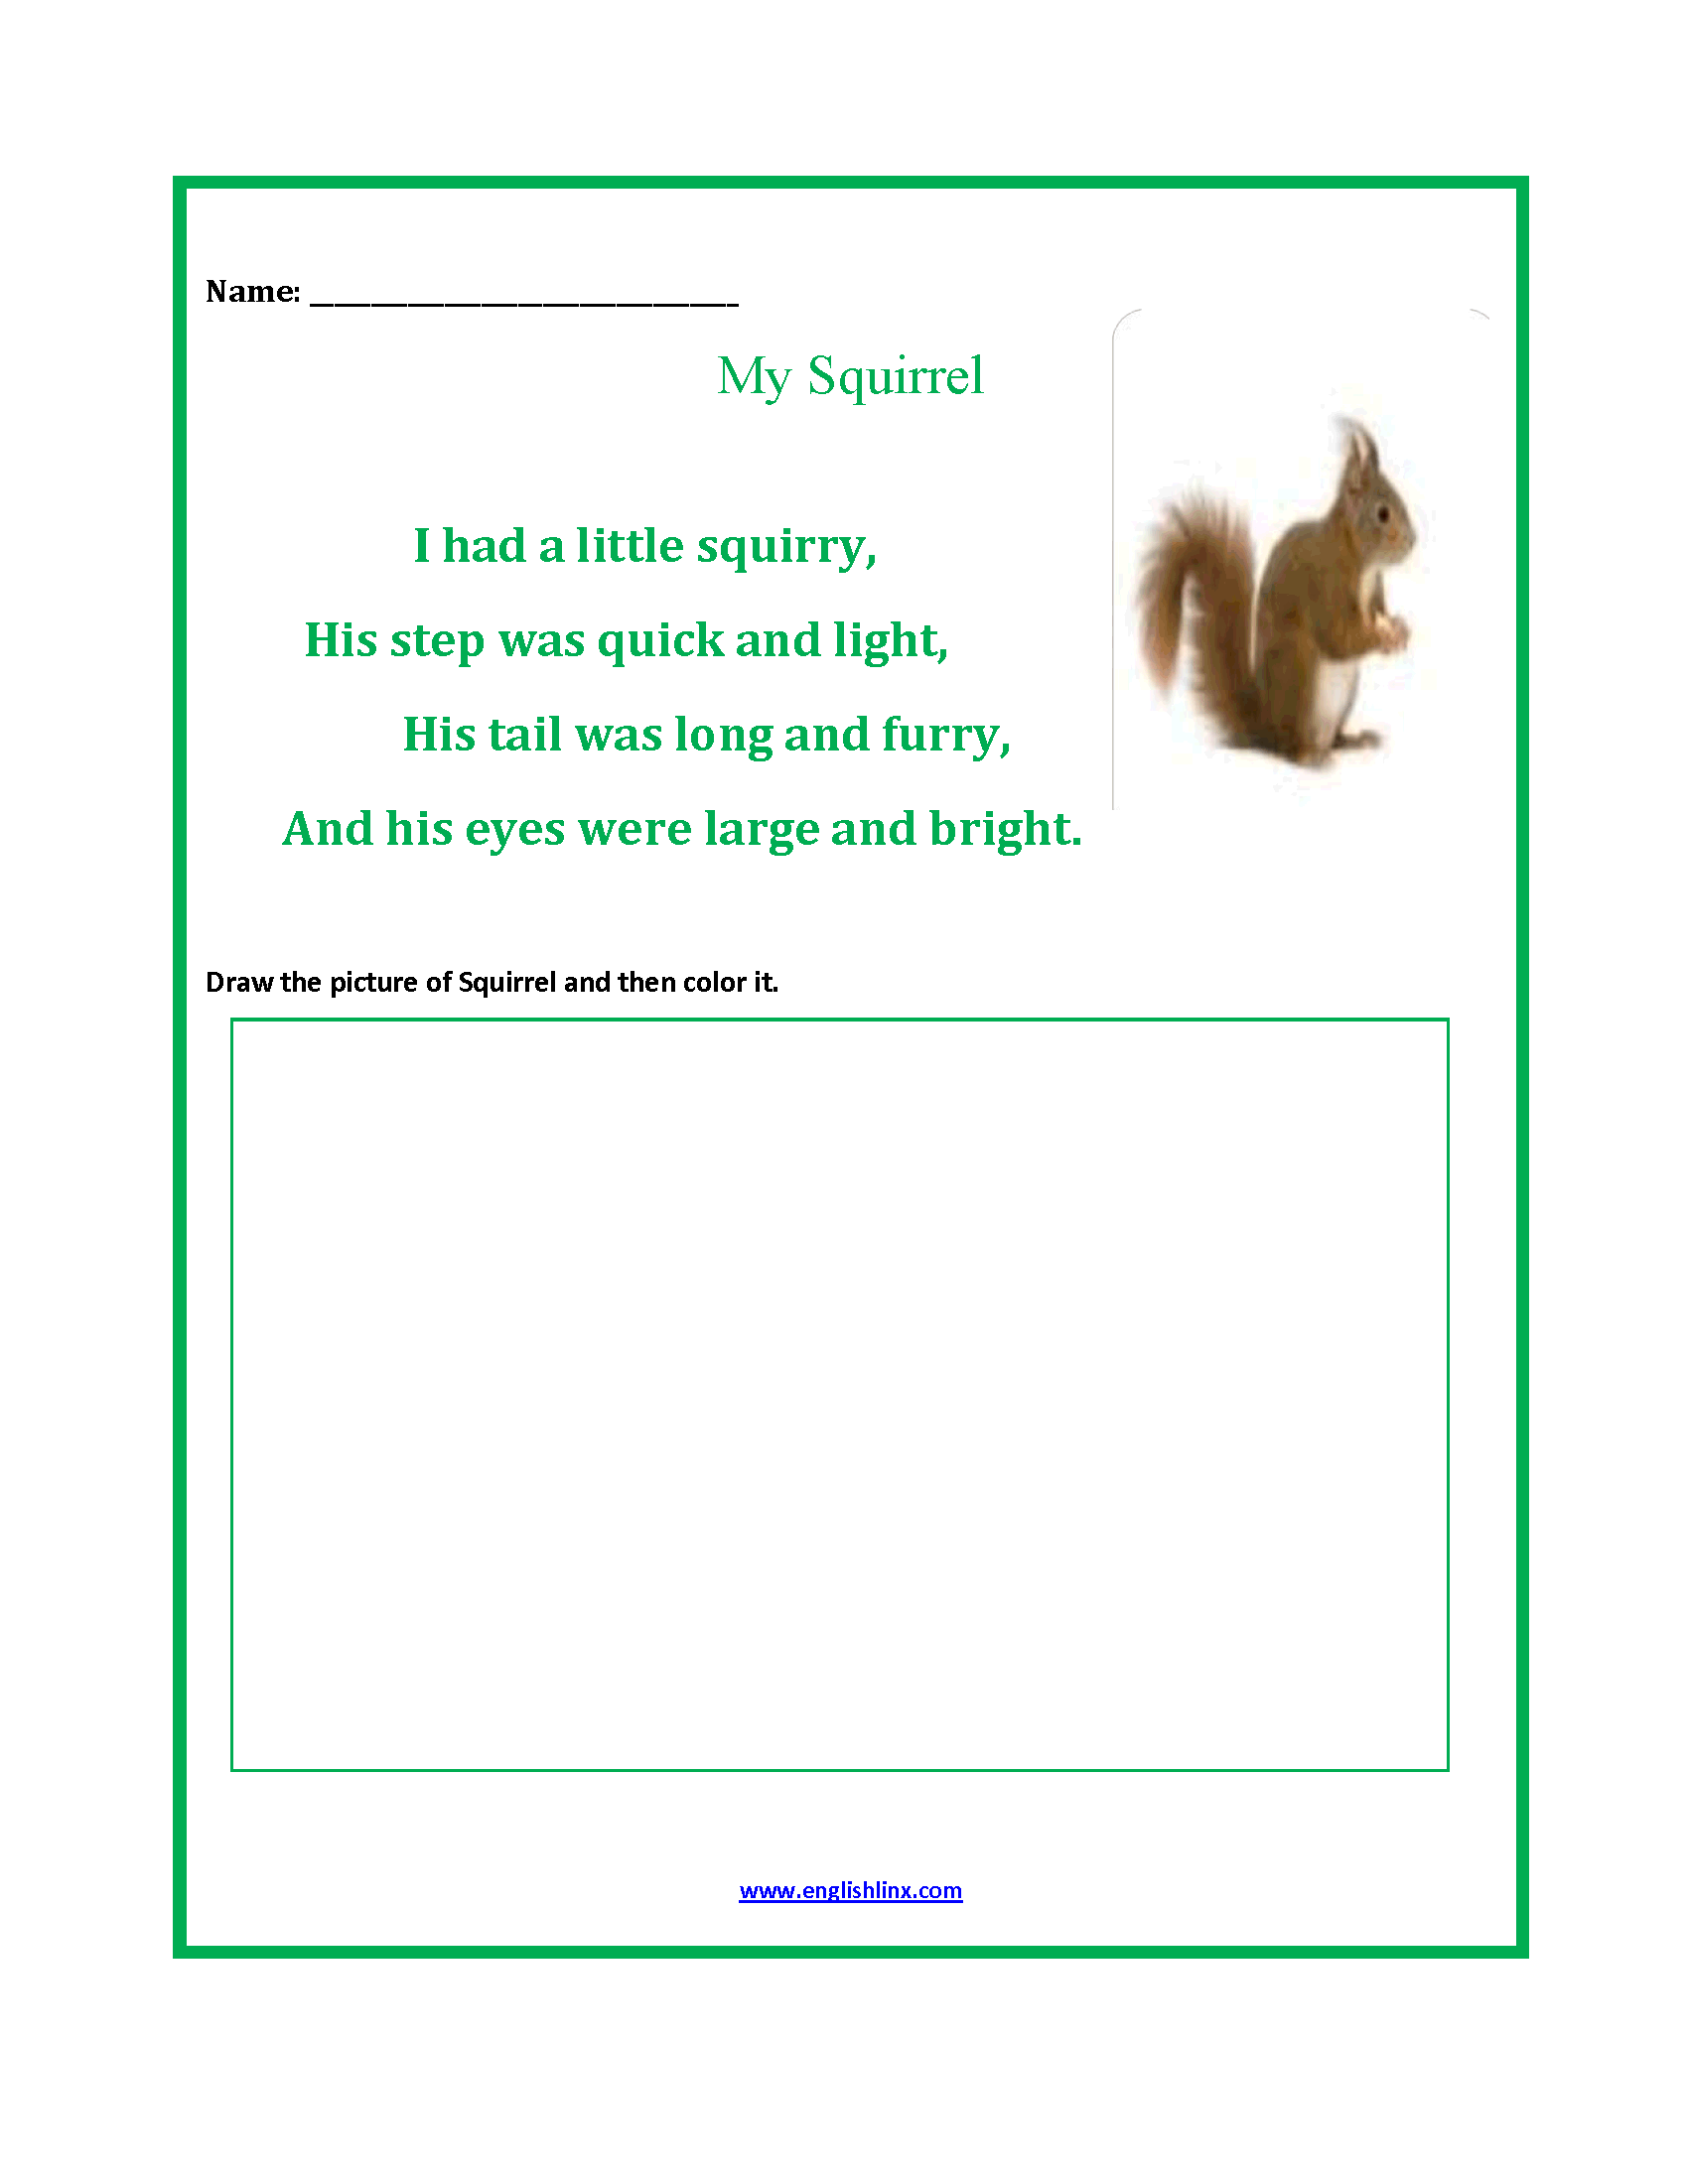 My Squirrel Poetry Worksheets